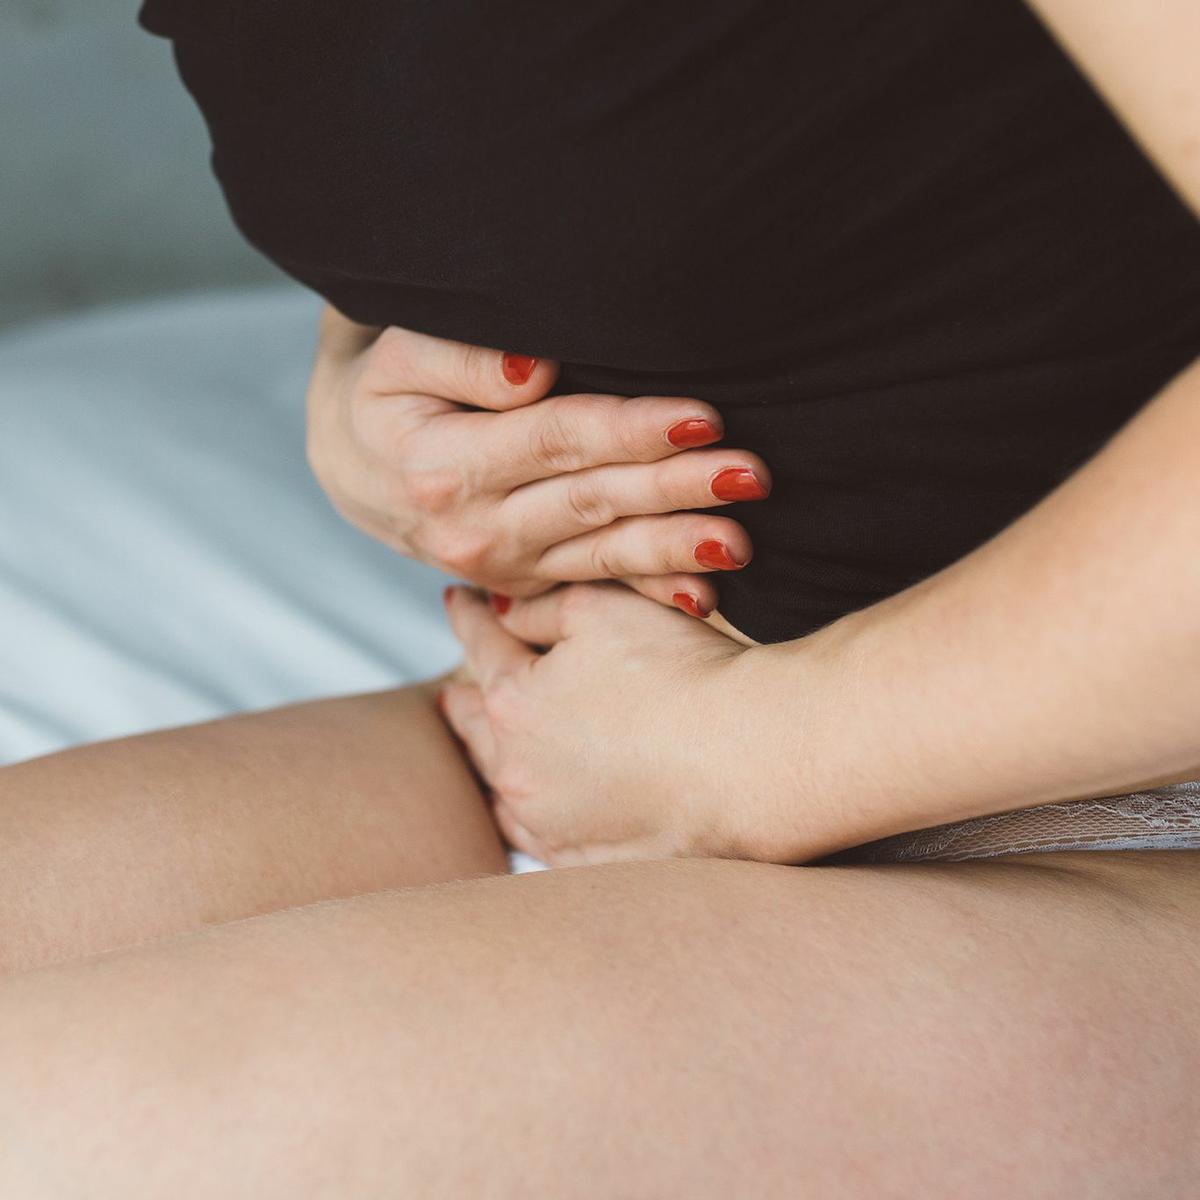 Hinchazón abdominal: Primeros síntomas de embarazo